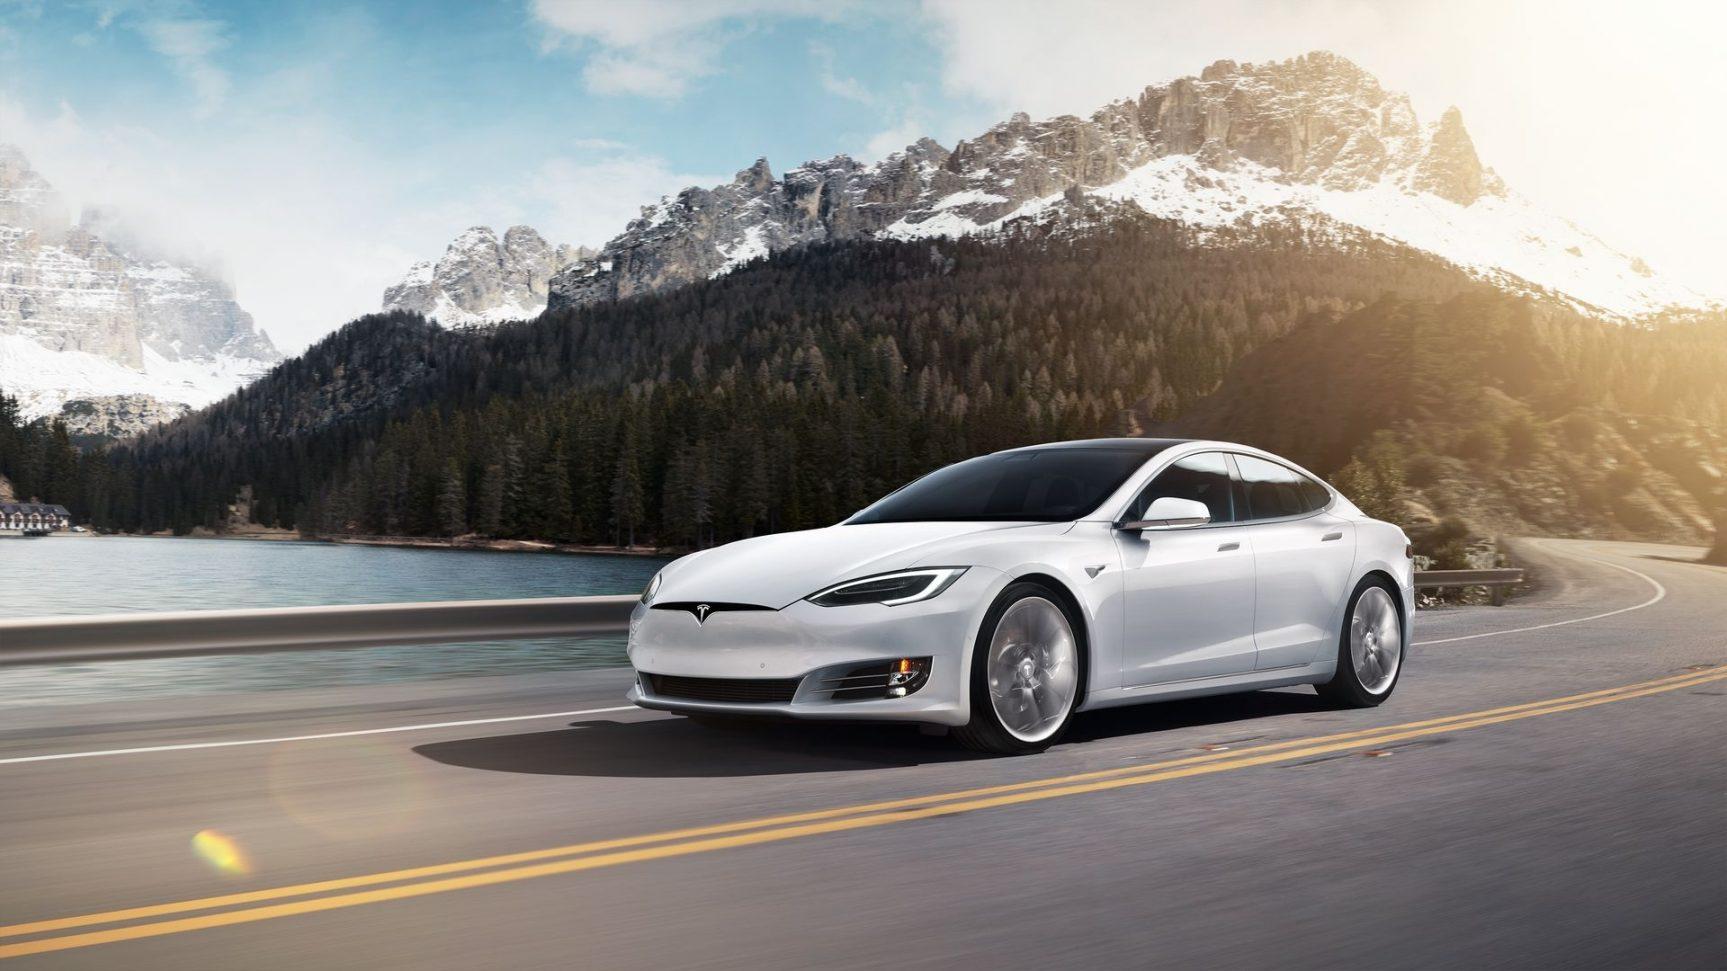 Best 2019 Tesla Model 3 Rear HD Wallpaper. Best Car Magazine